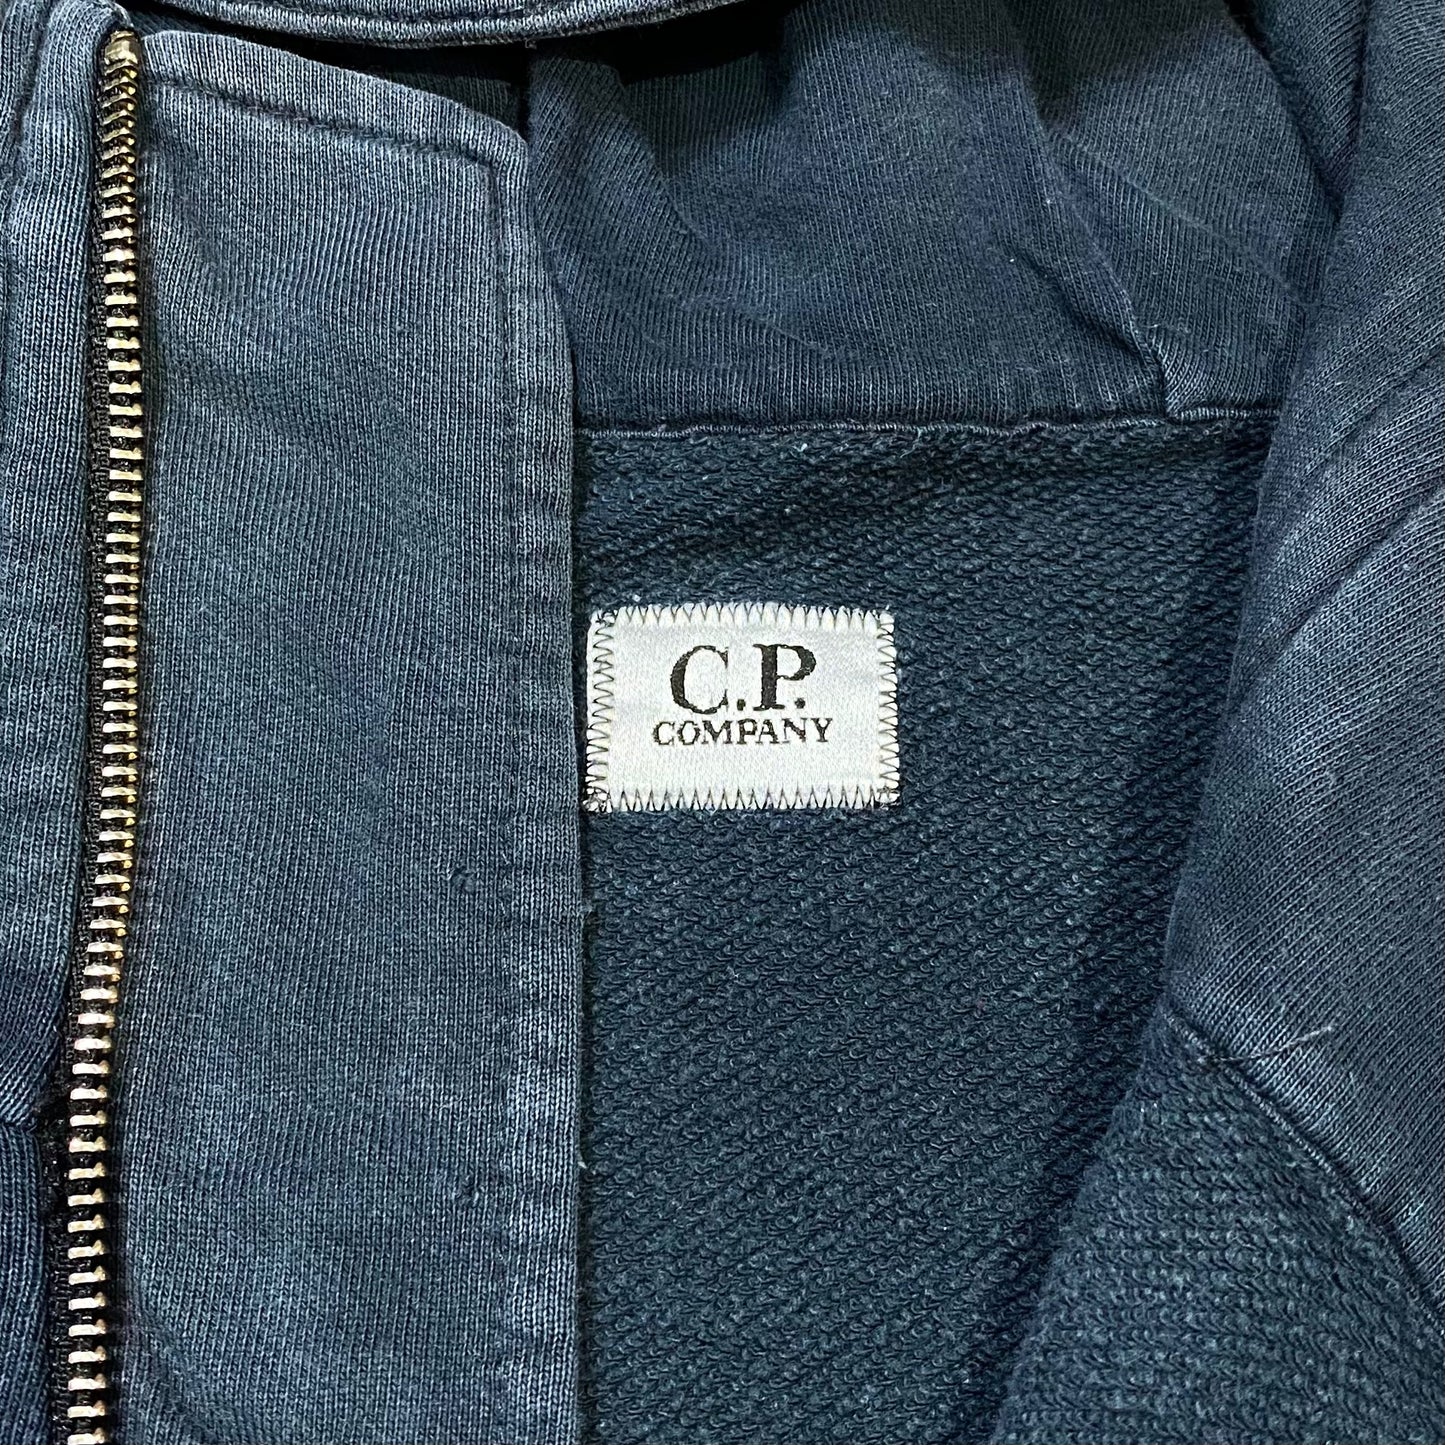 00's "C.P company" Zip up hoodie